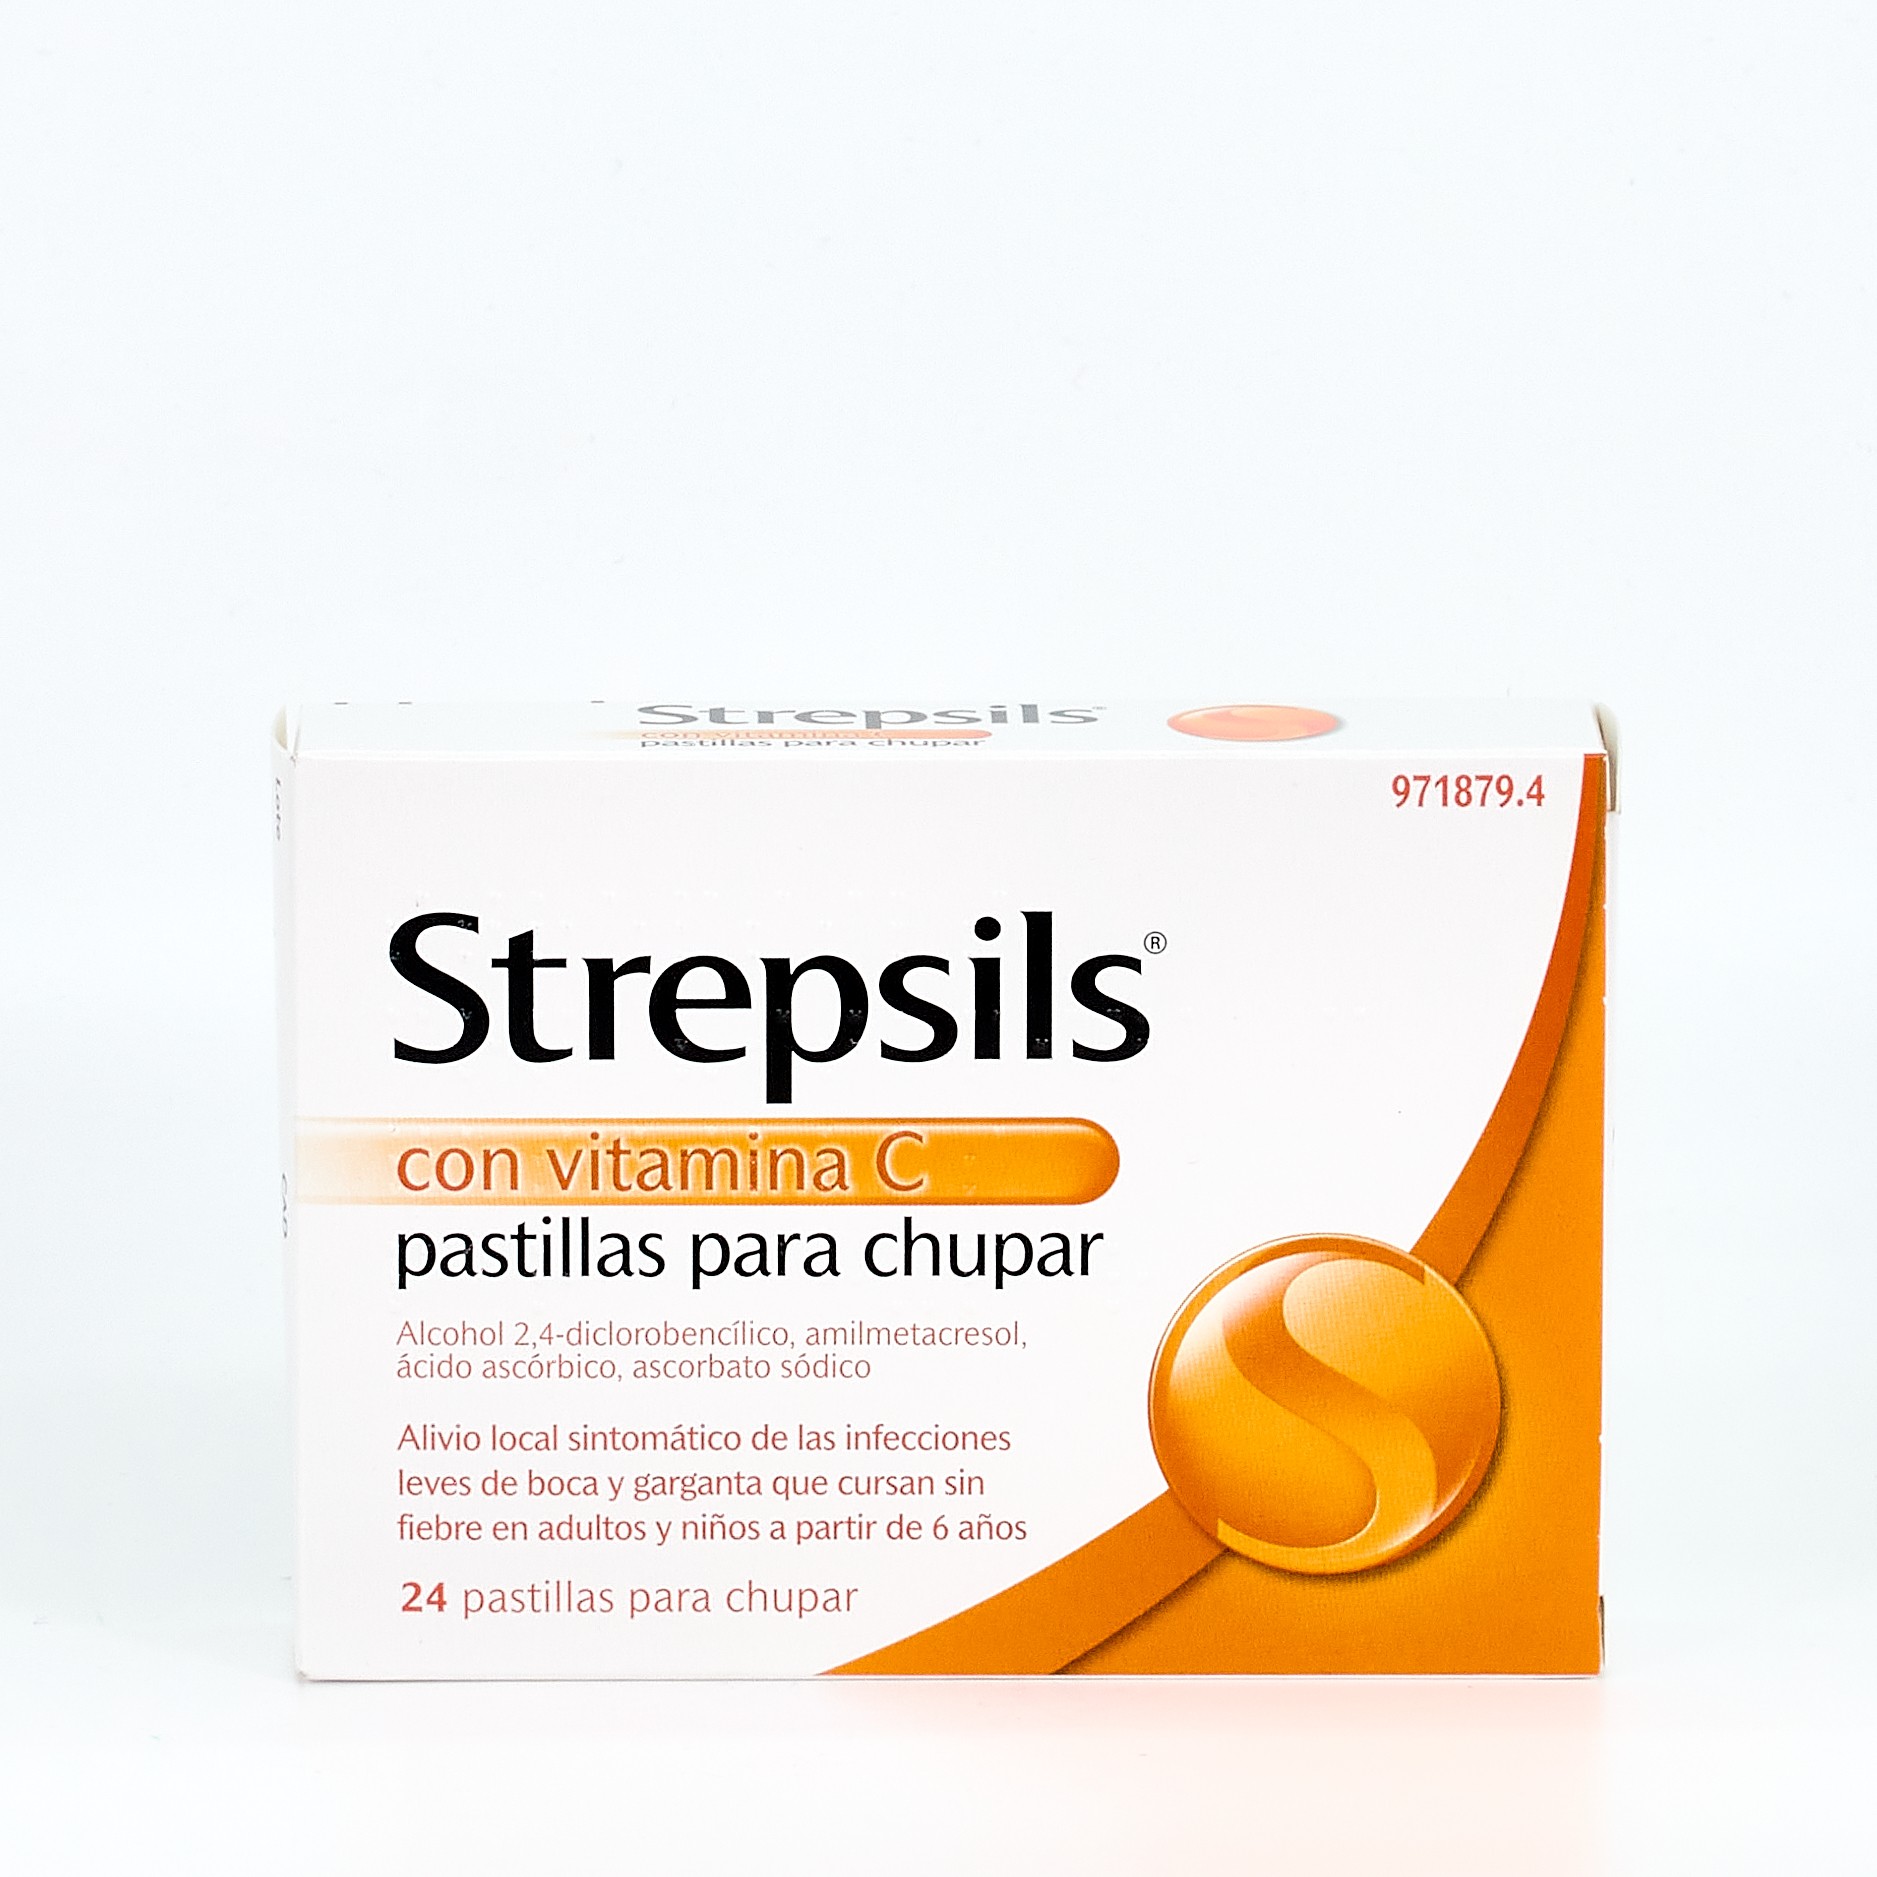 Comprar Strepsils con vitamina C, 24 pastillas para chupar sin receta